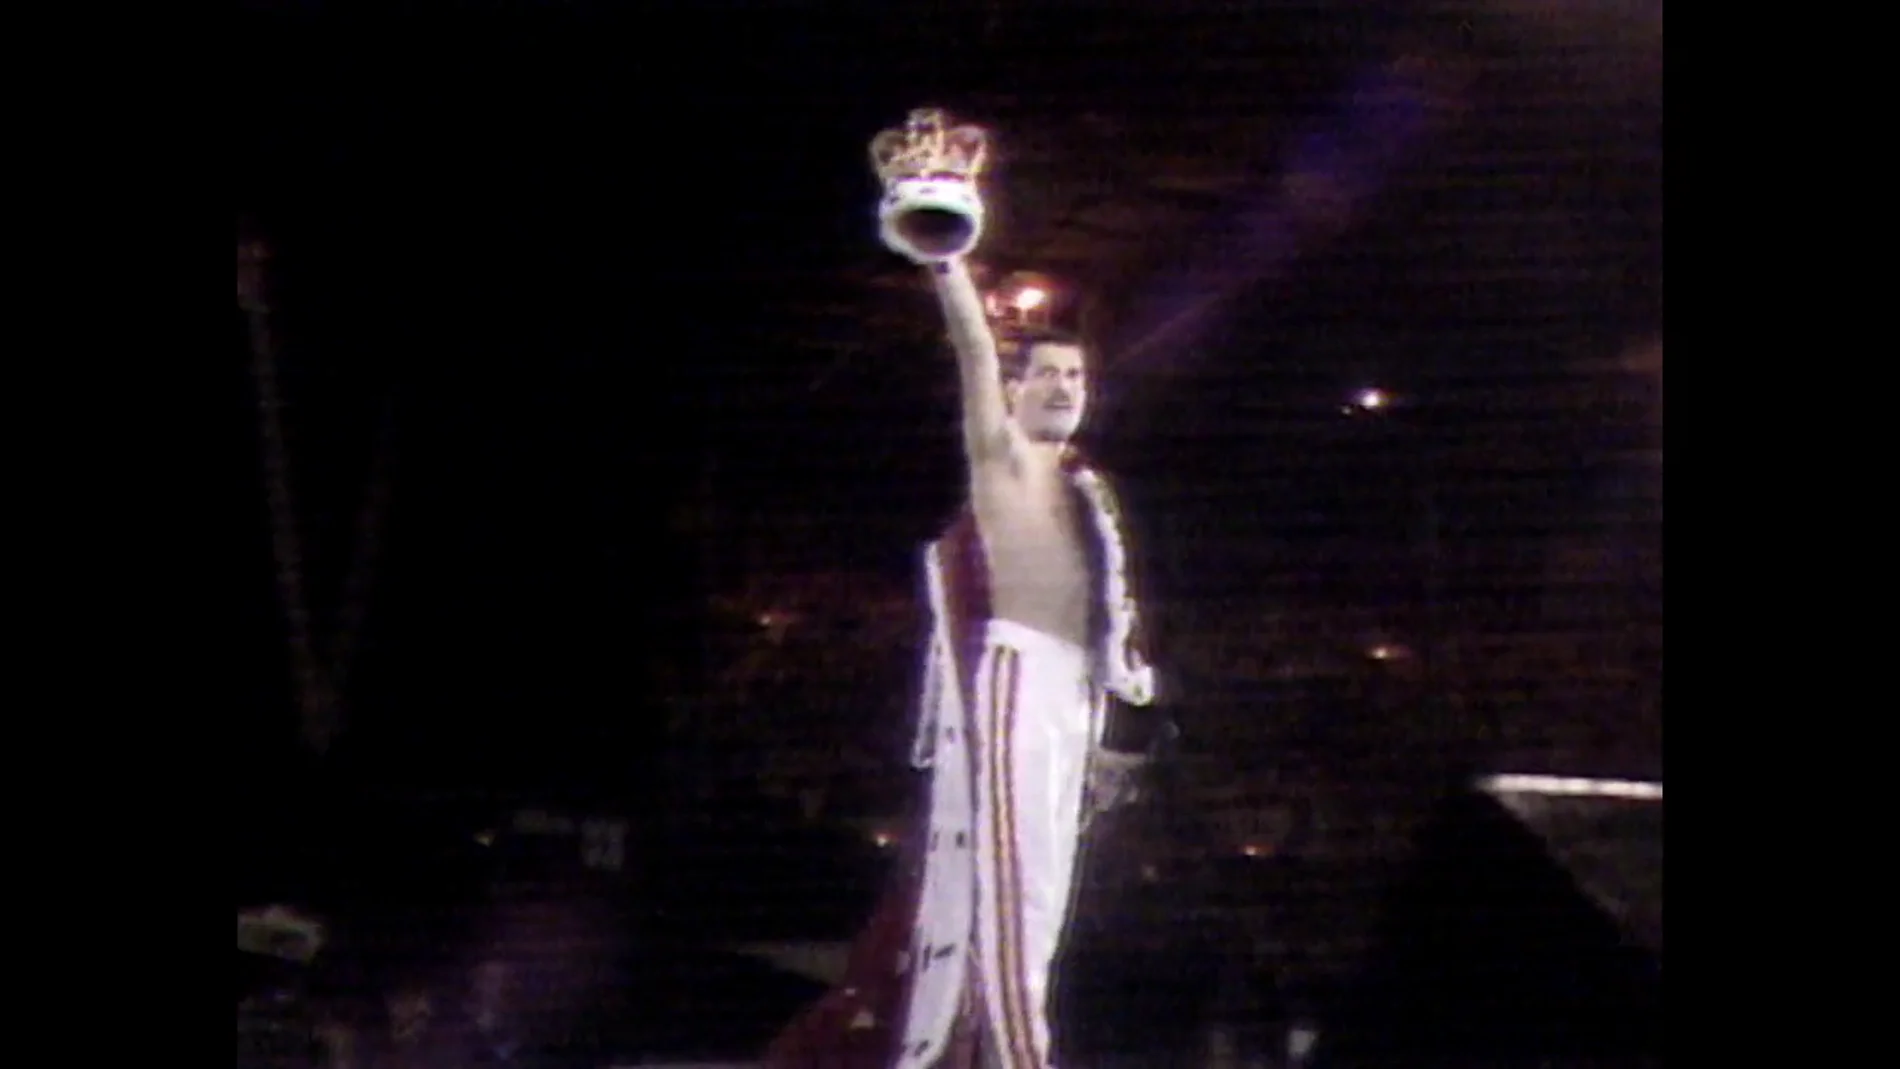 La muerte de Freddie Mercury tras confirmar que tenía sida, utilizada para estigmatizar al colectivo LGTBI: se habló de 'cáncer gay'